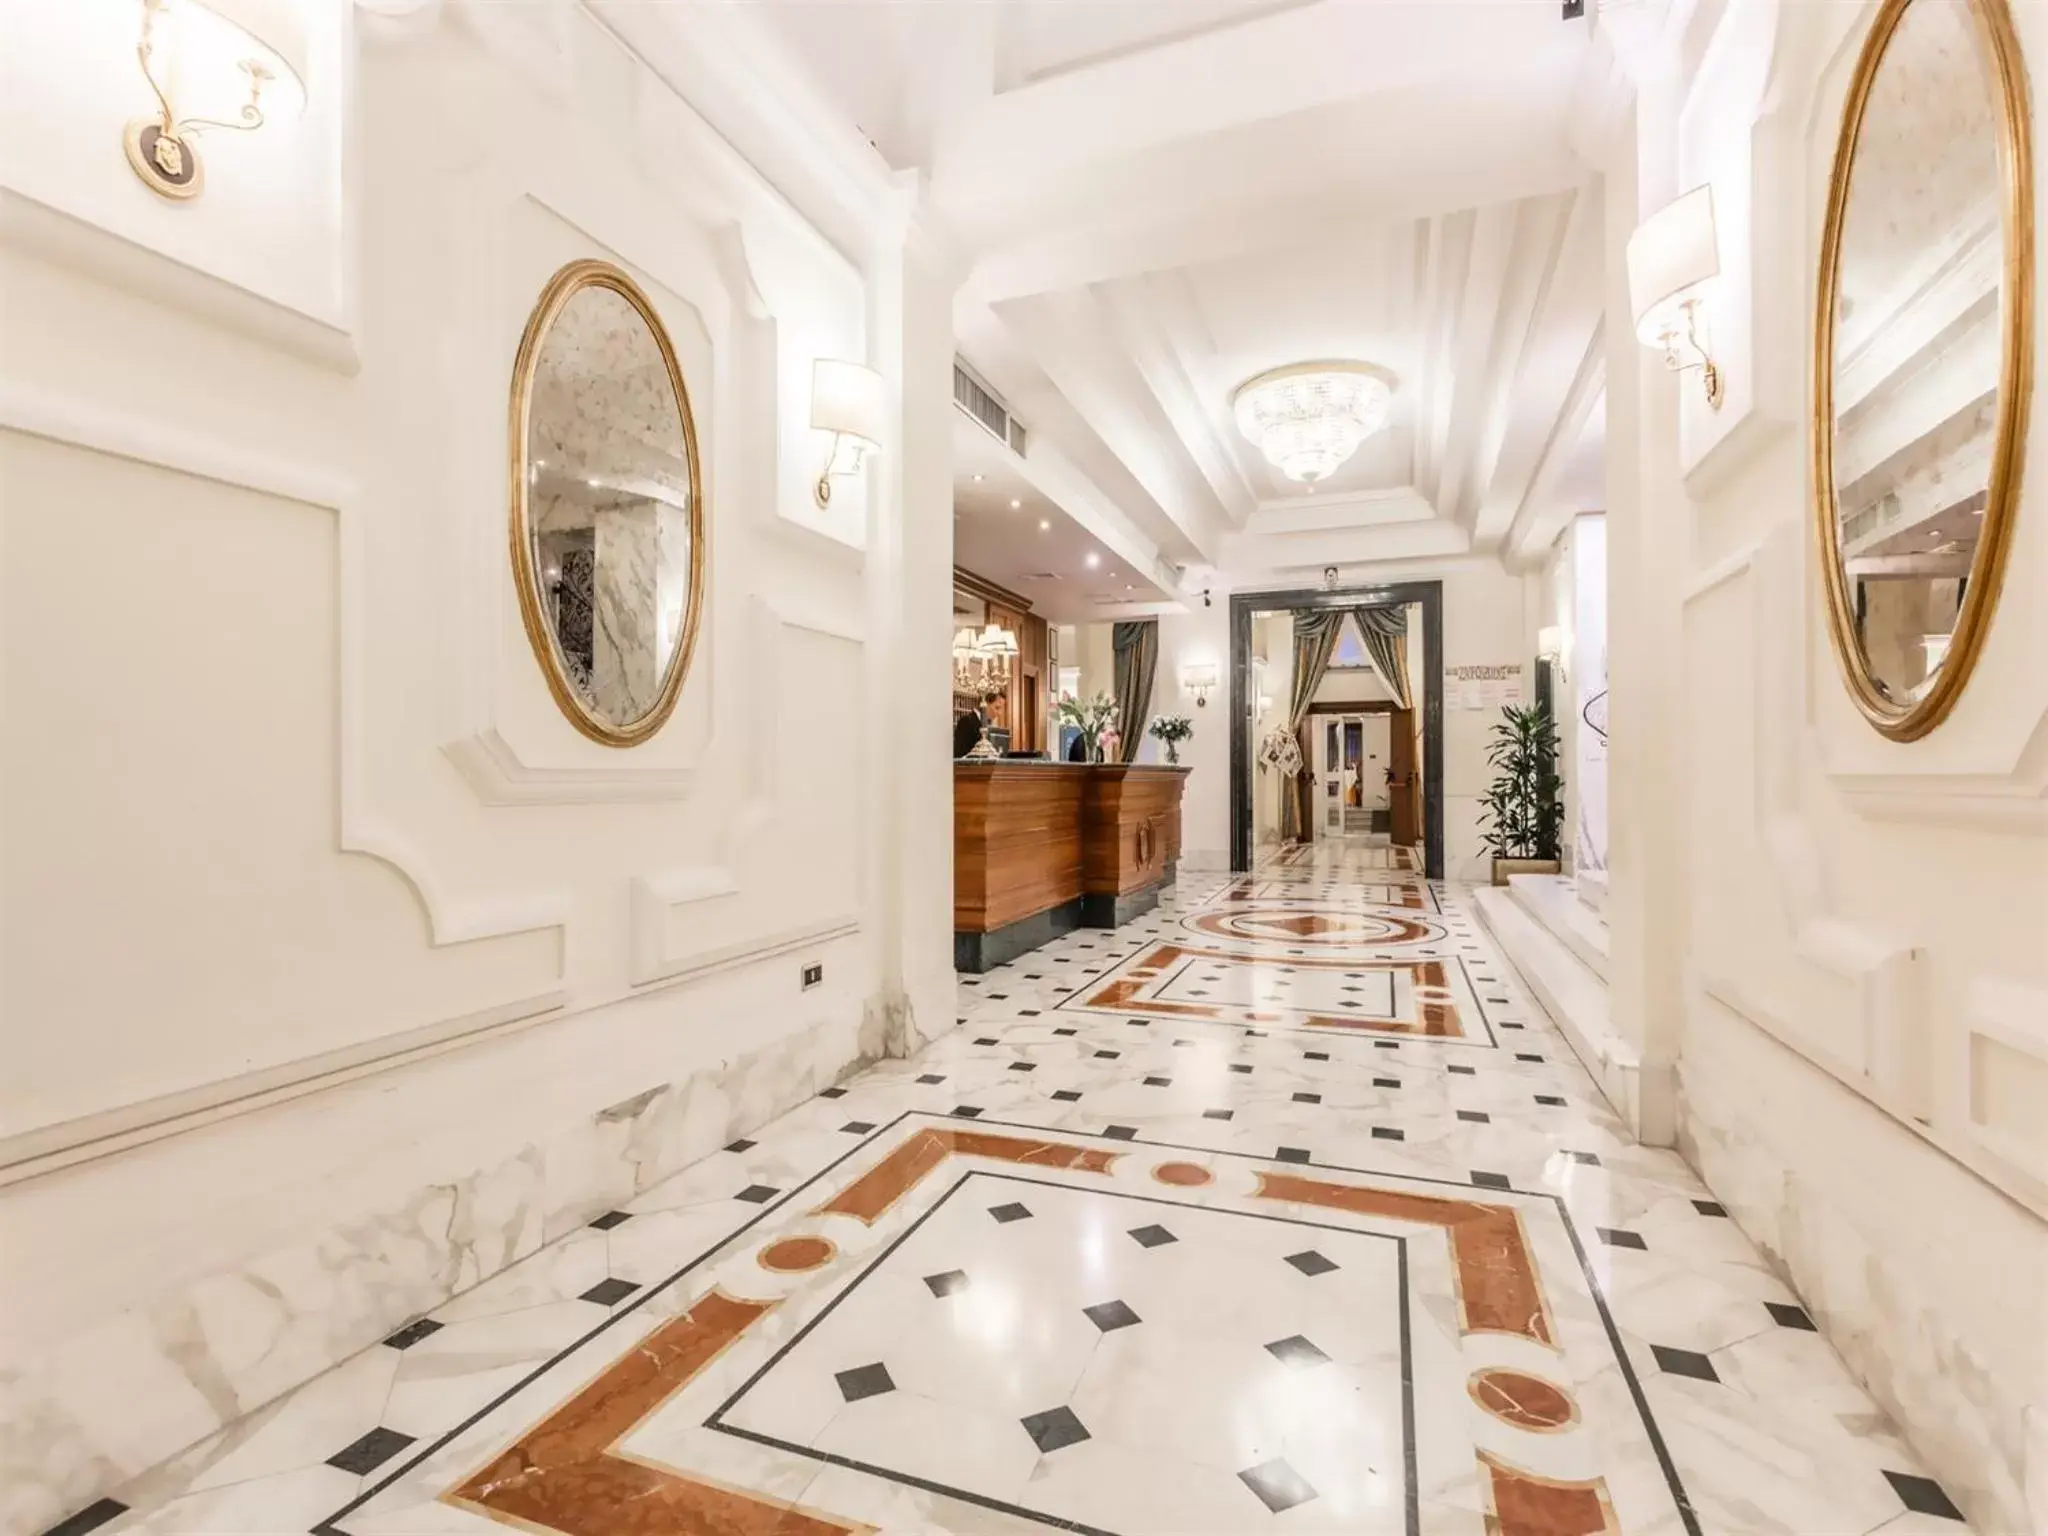 Lobby or reception, Lobby/Reception in Raeli Hotel Archimede